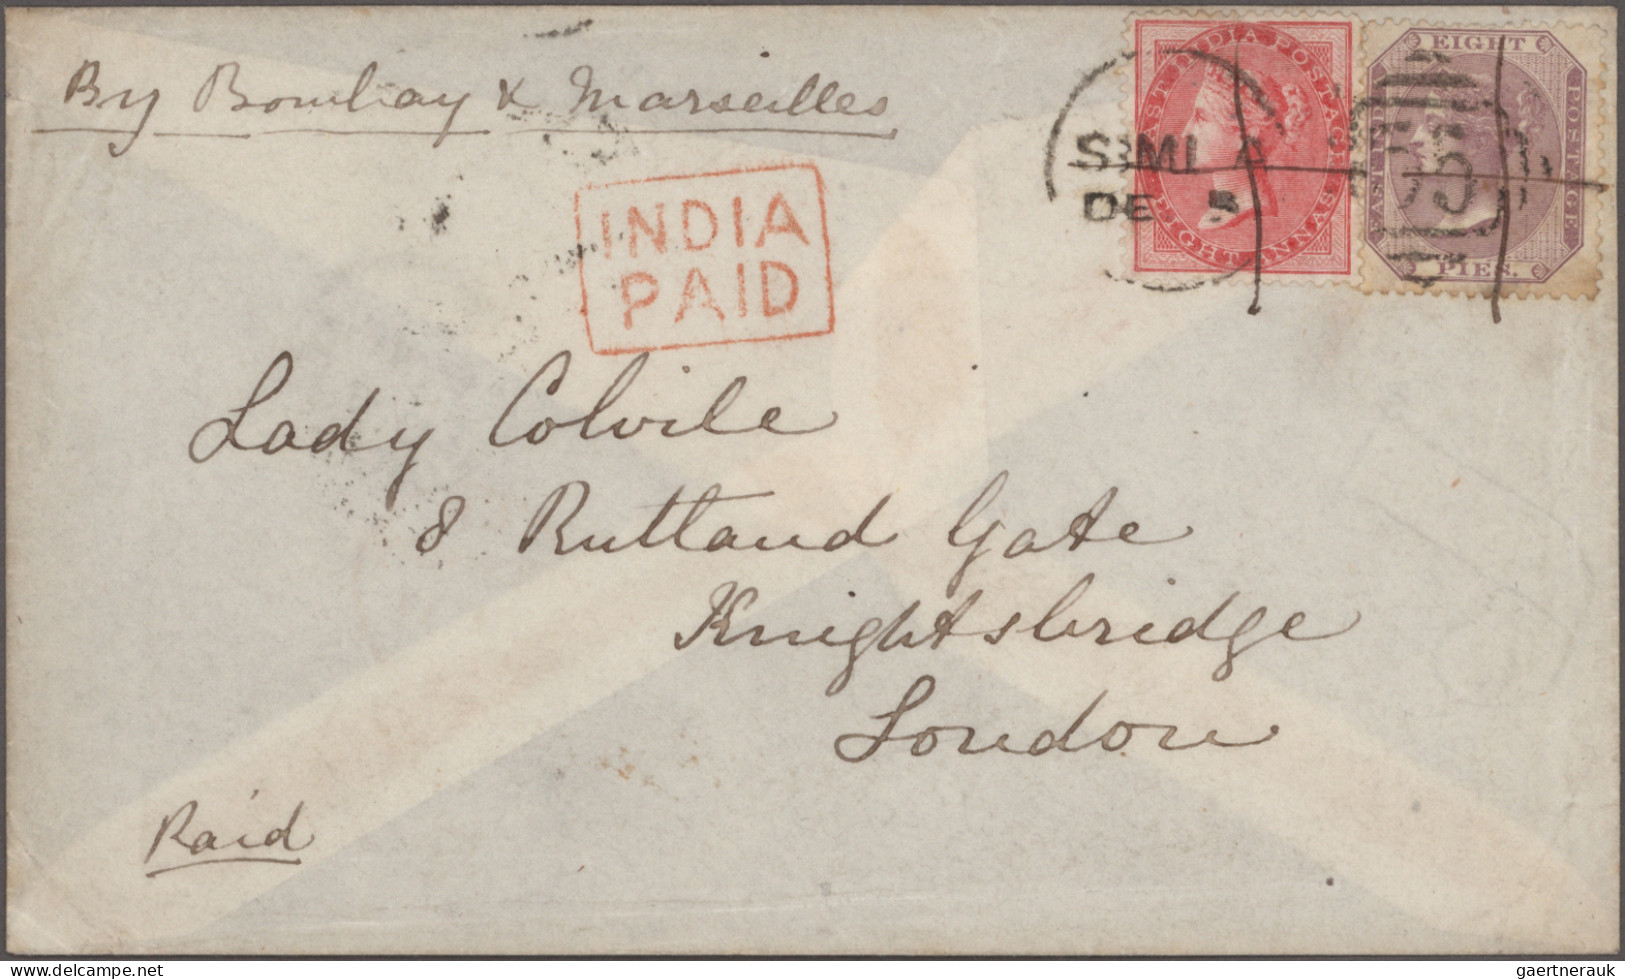 Europe: 1800/1900 (ca.), umfangreicher Posten Briefe, Briefvorderseiten und Ganz